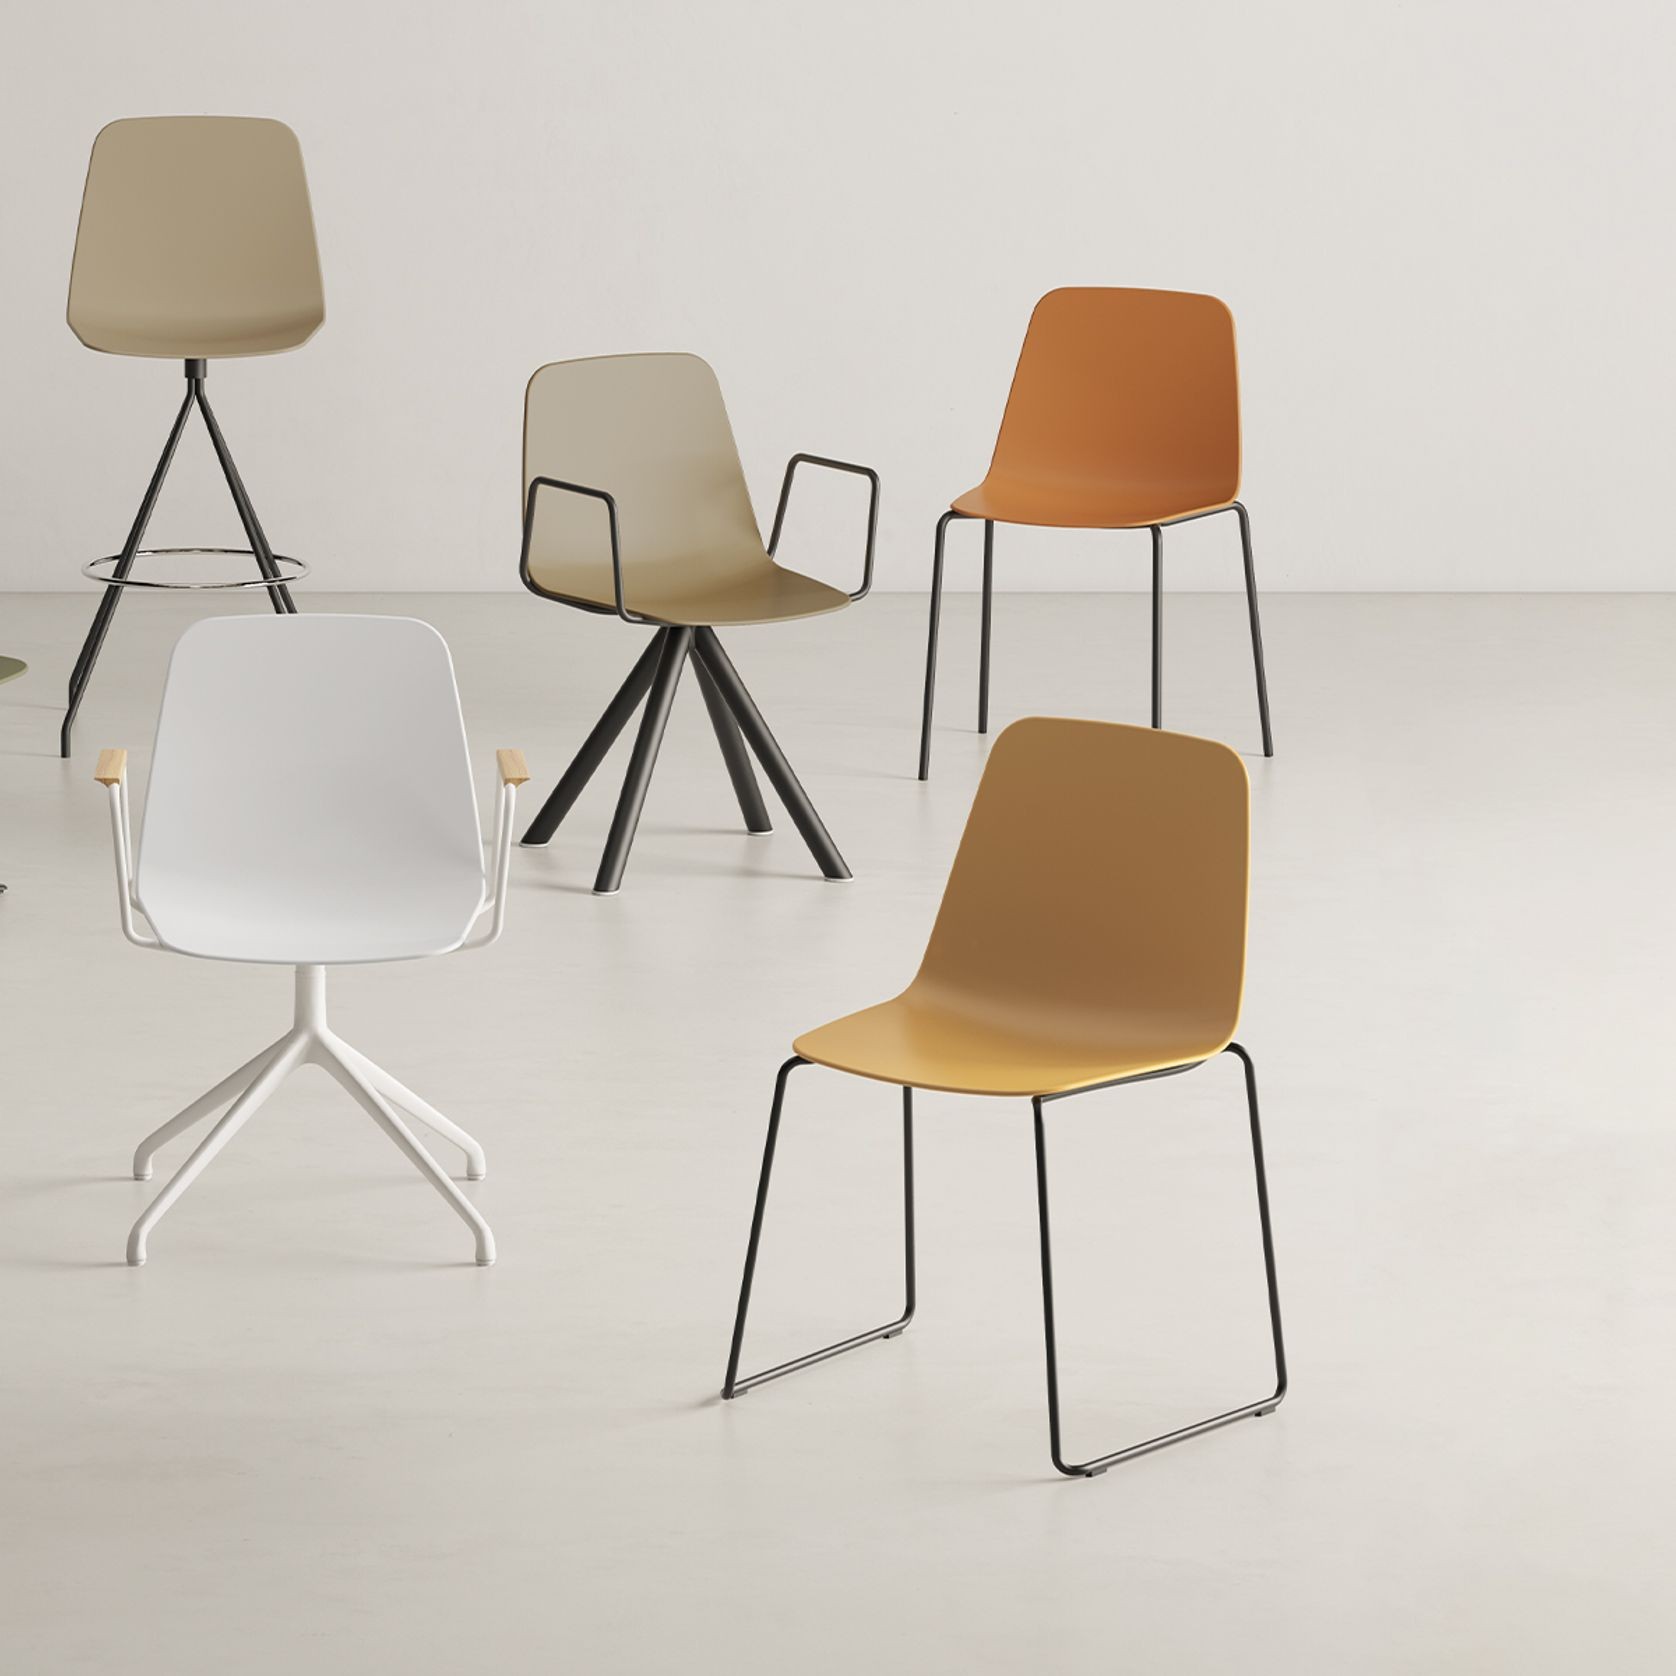 Maarten Plastic Chair - Four Metal Legs gallery detail image